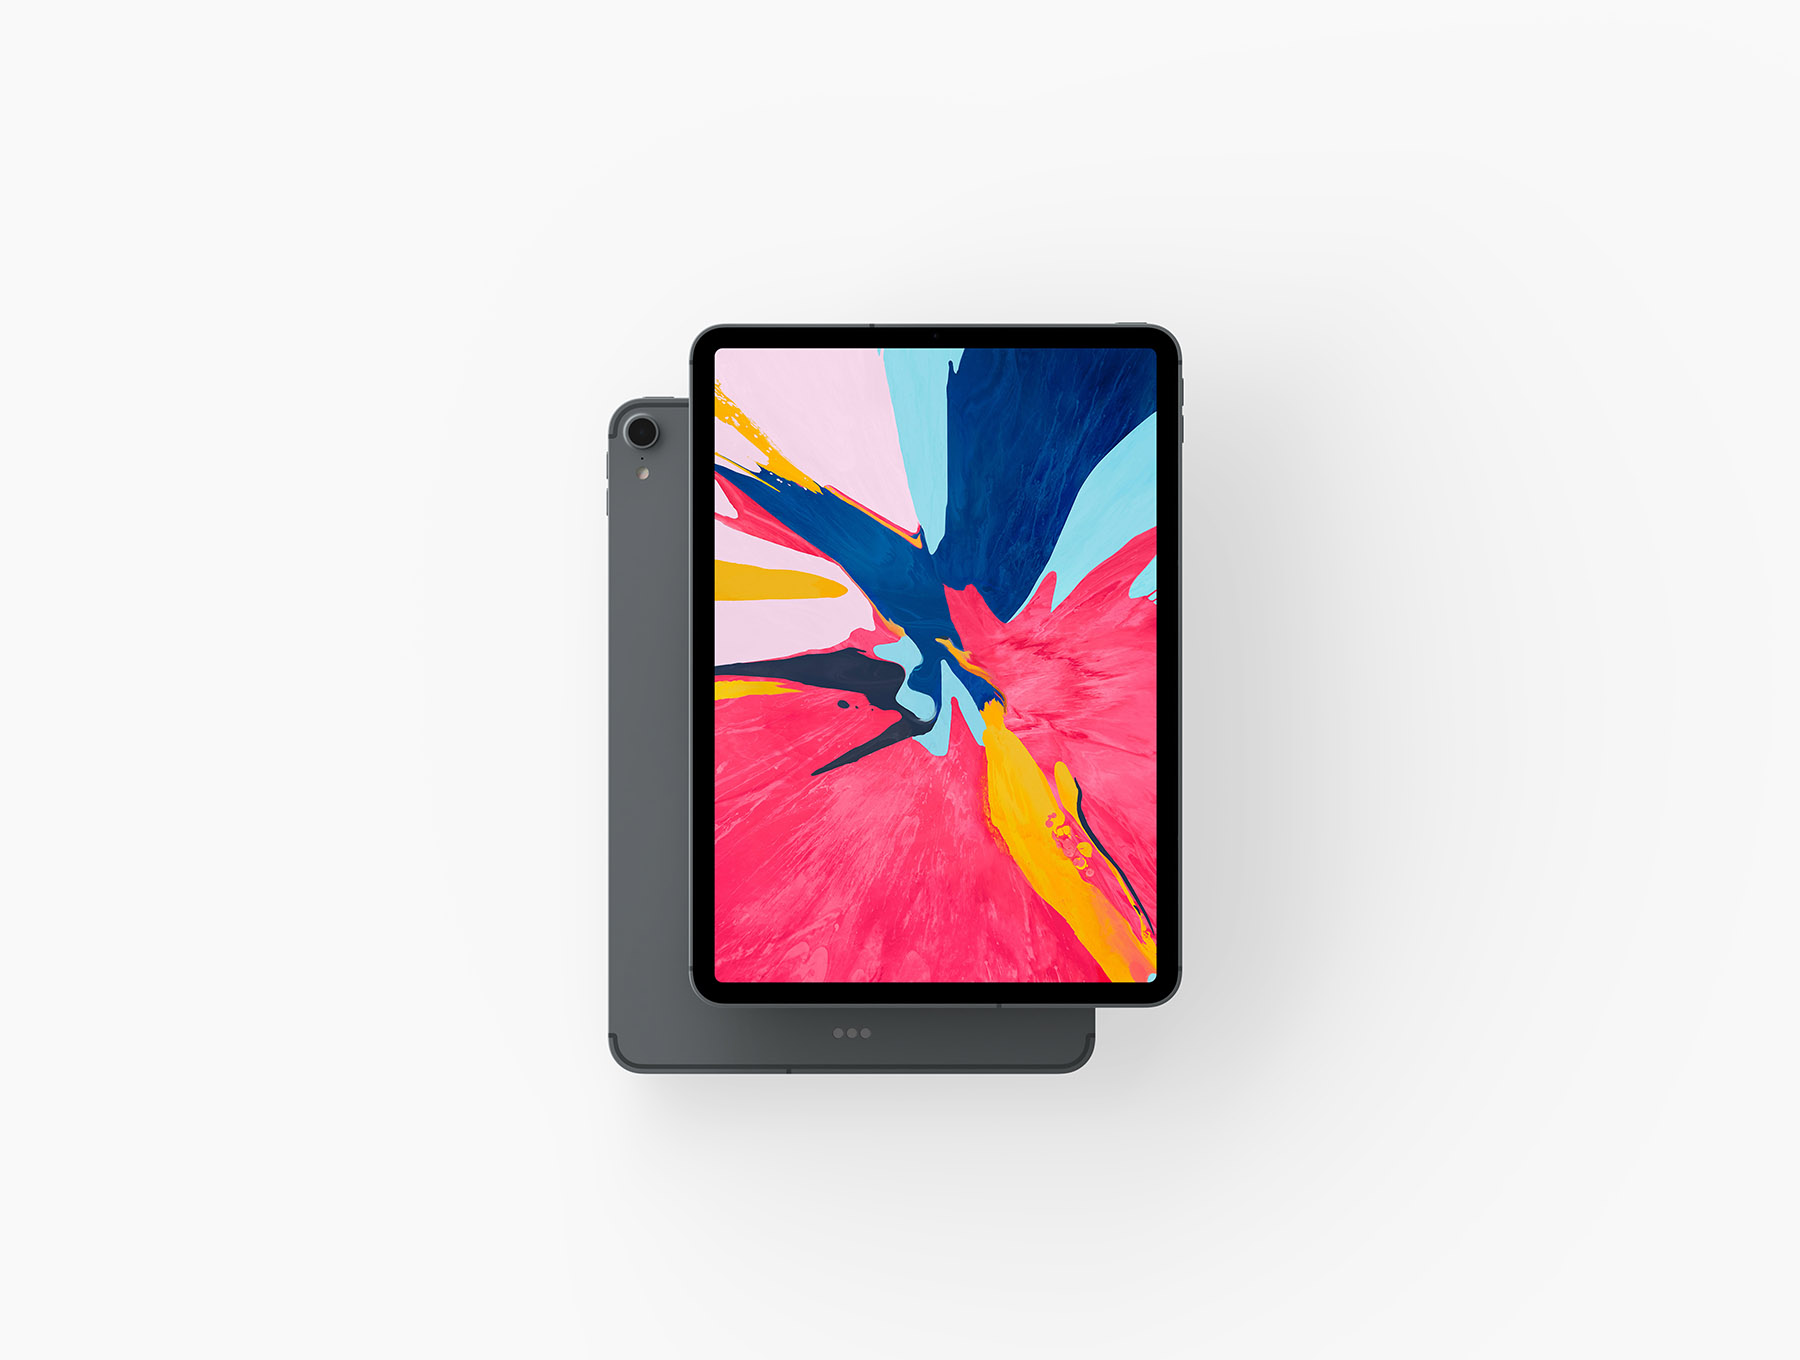 iPad Pro 2018展示样机下载 [PSD]插图(1)